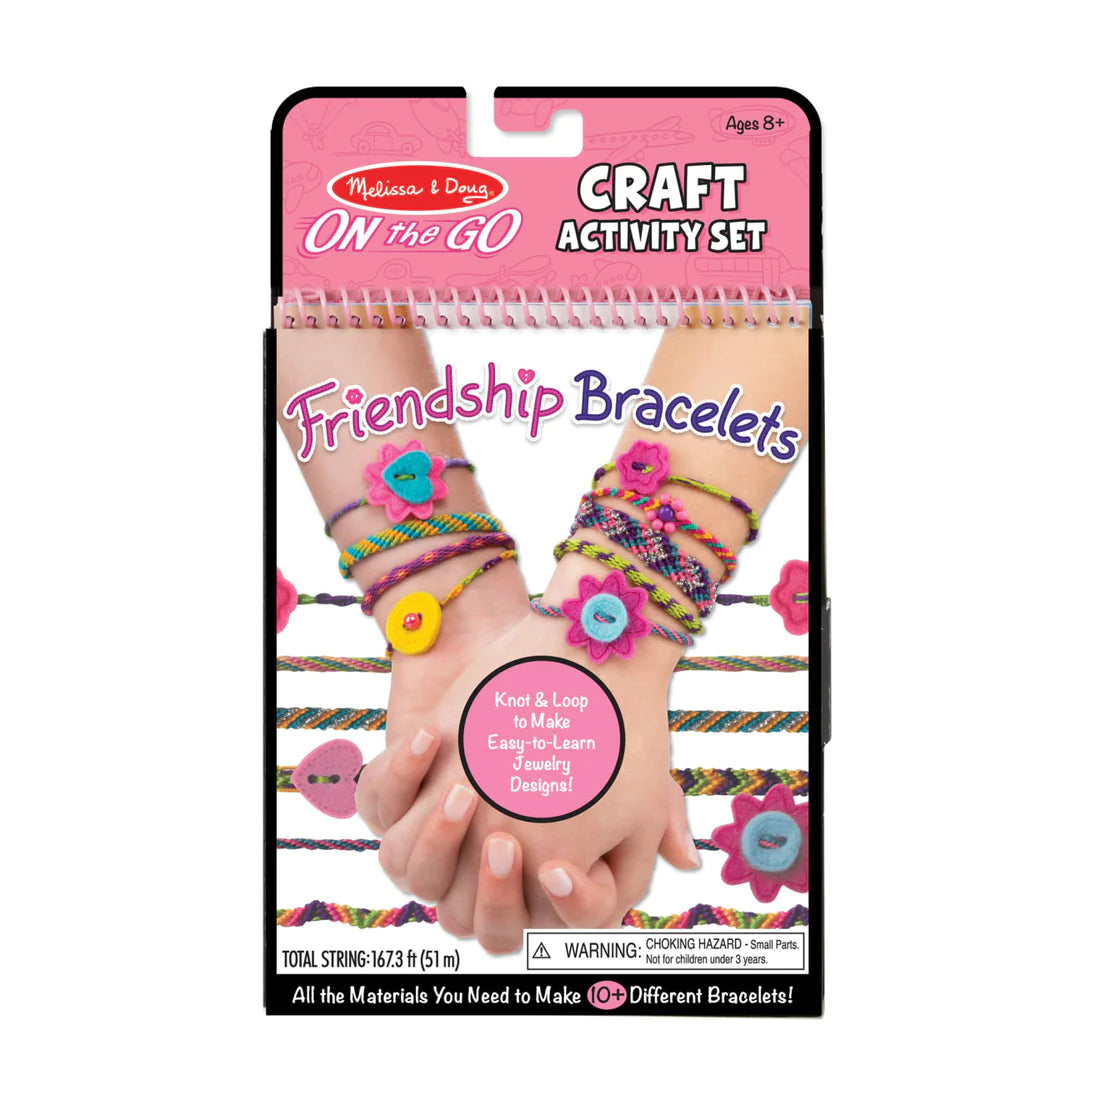 On the Go Craft Activity Friendship Bracelets Set